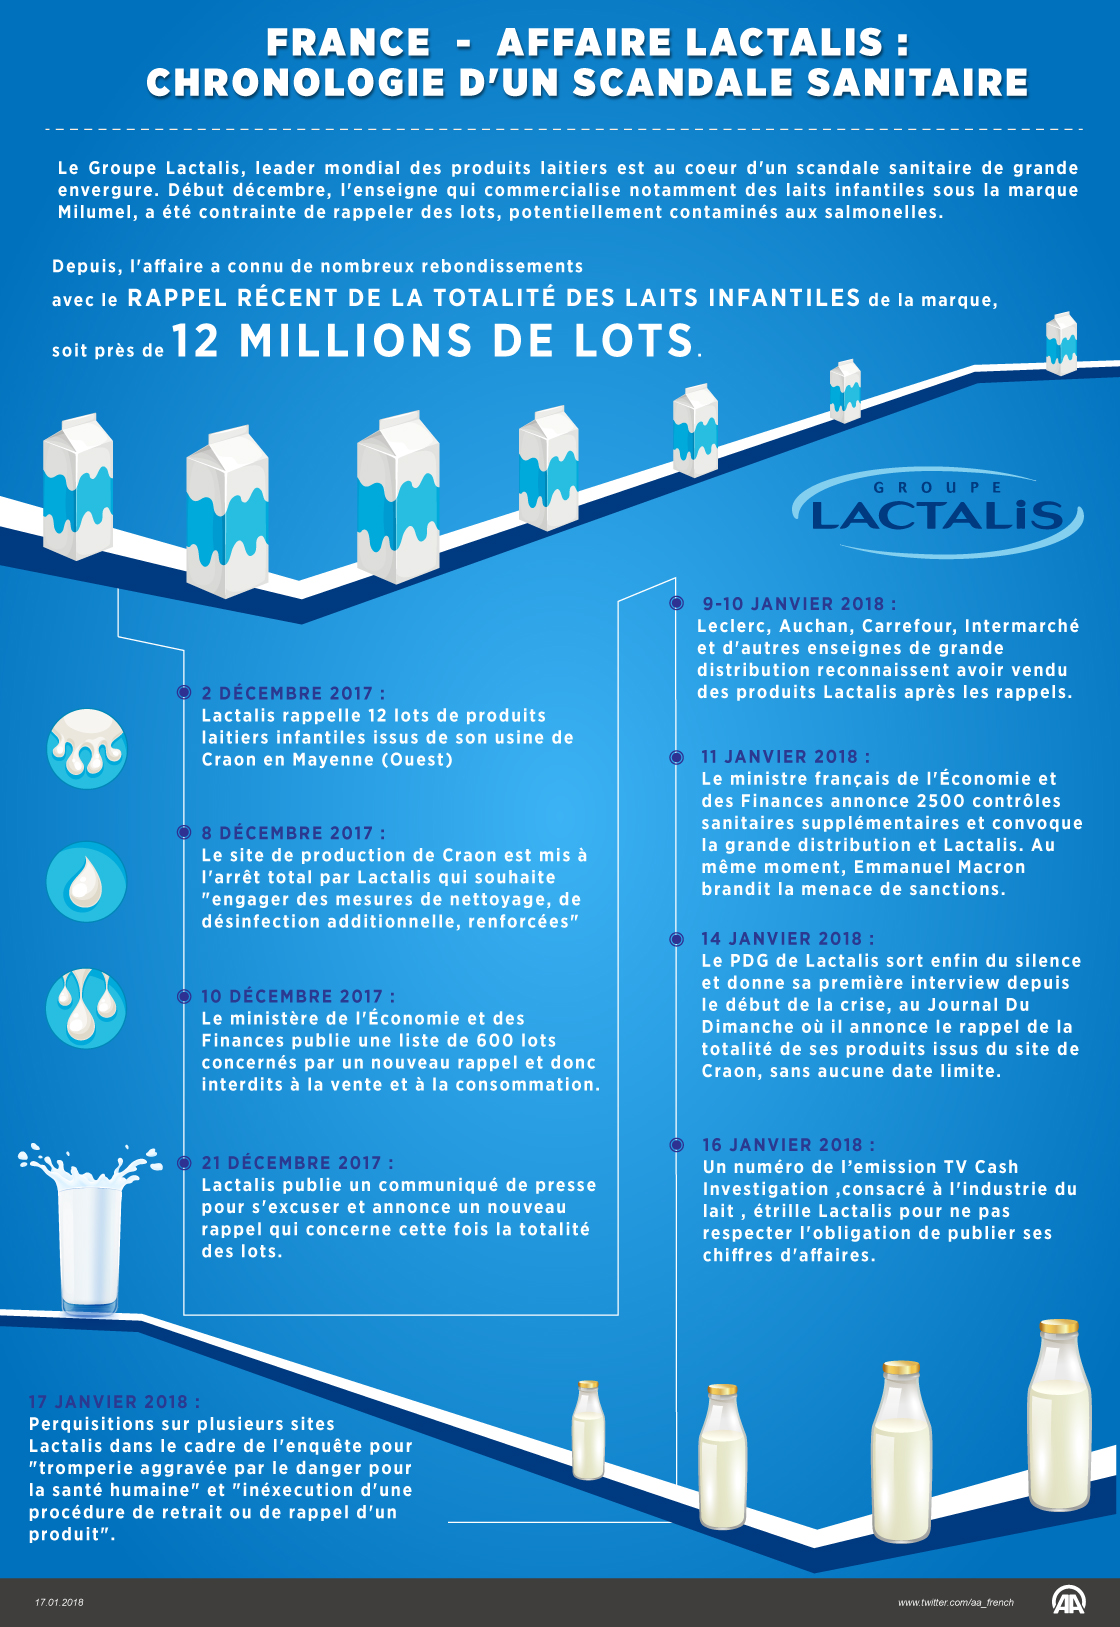 France/Affaire Lactalis: Chronologie d'un scandale sanitaire (Infographie)